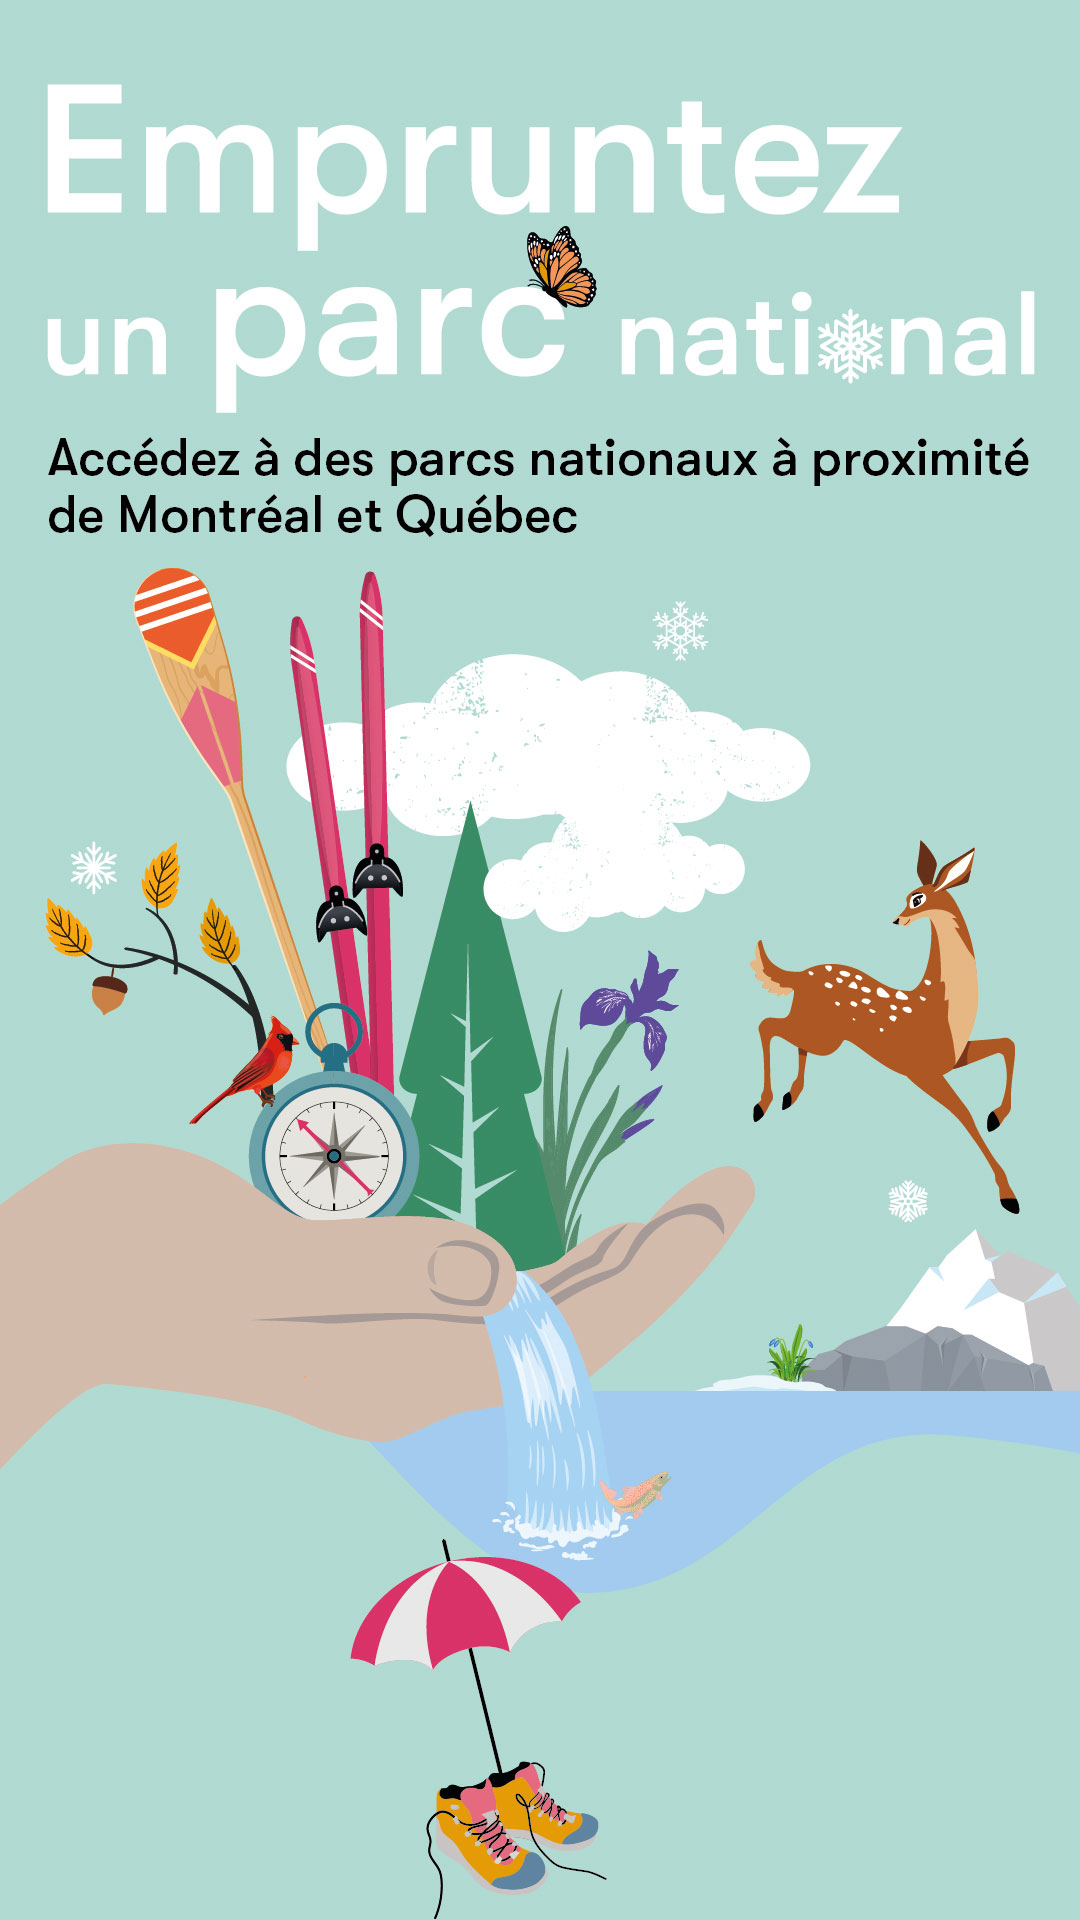 Empruntez un parc national - accédez à des parcs nationaux à proximité de Montréal et Québec.